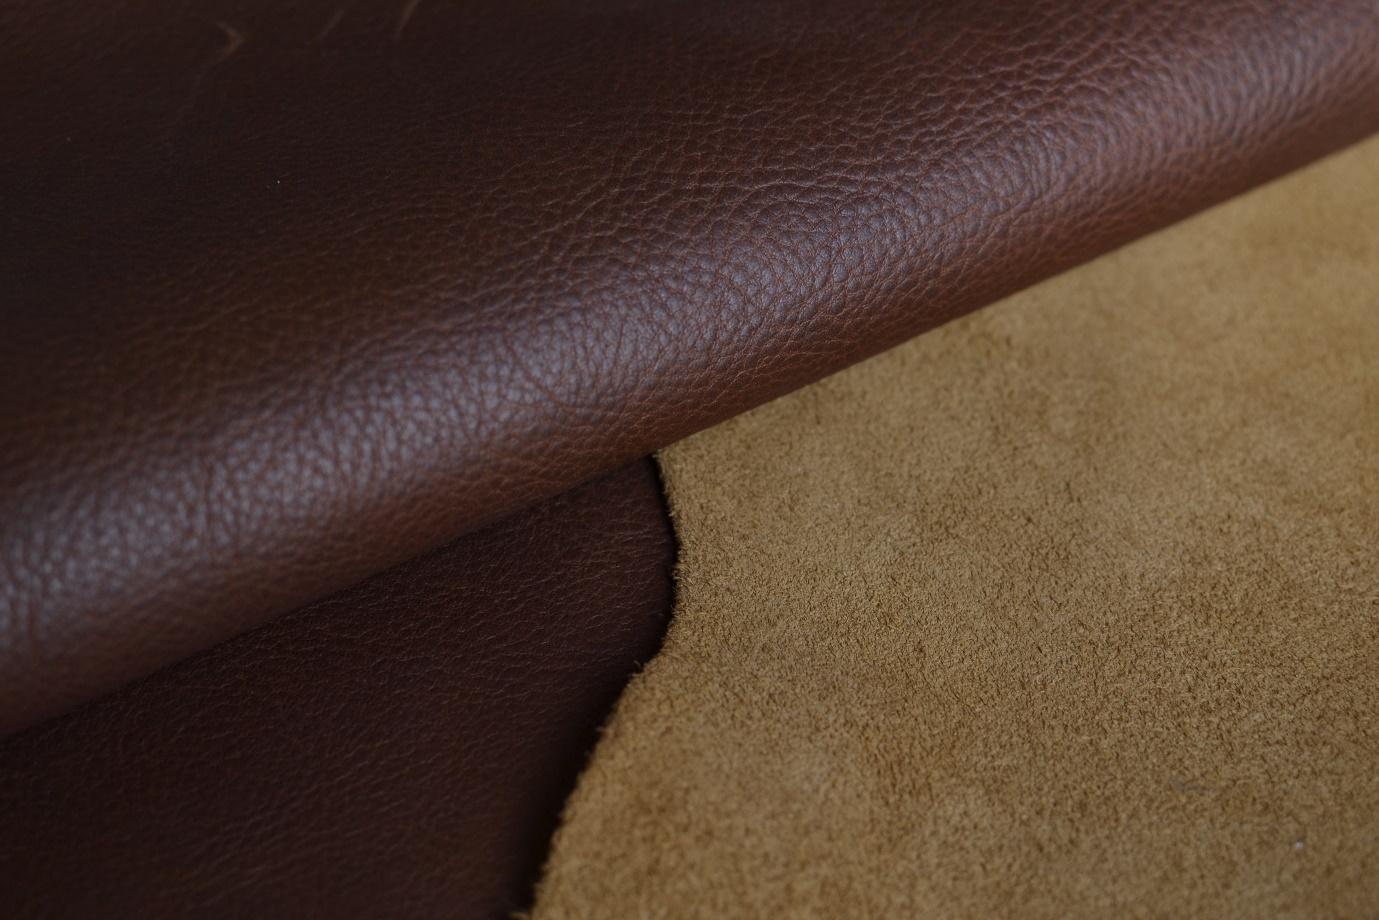 Hiểu biết cơ bản về da bò saffiano leather ✅ Liên hệ Mạnh Tiến 098.555.1486 để nhận thông tin chi tiết thêm về ✅ Hiểu biết cơ bản về da bò saffiano leather mà bạn đang tìm kiếm ✅.